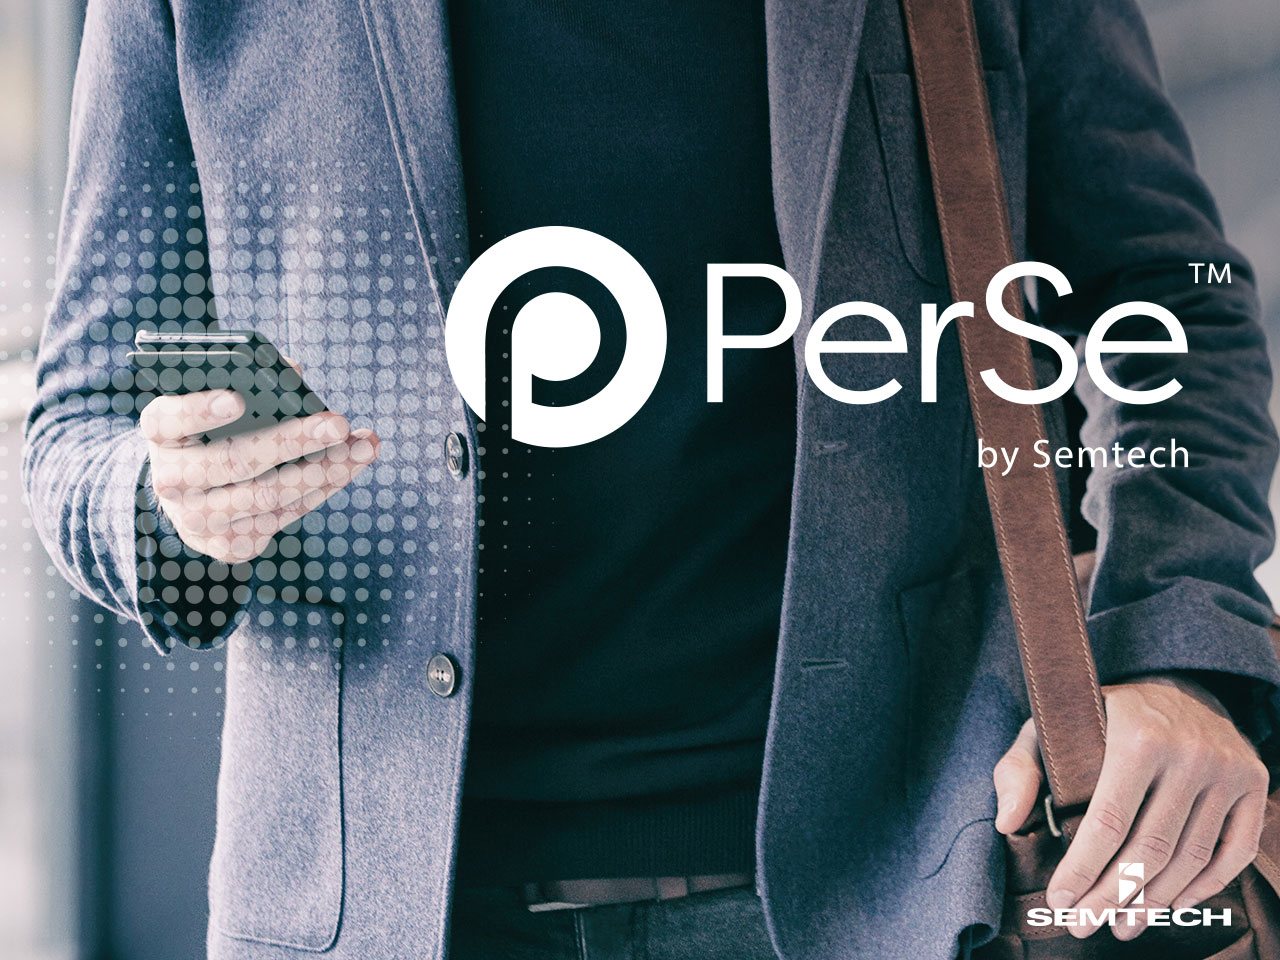 PerSe?傳感技術打造合規、高性能的智能手機設備